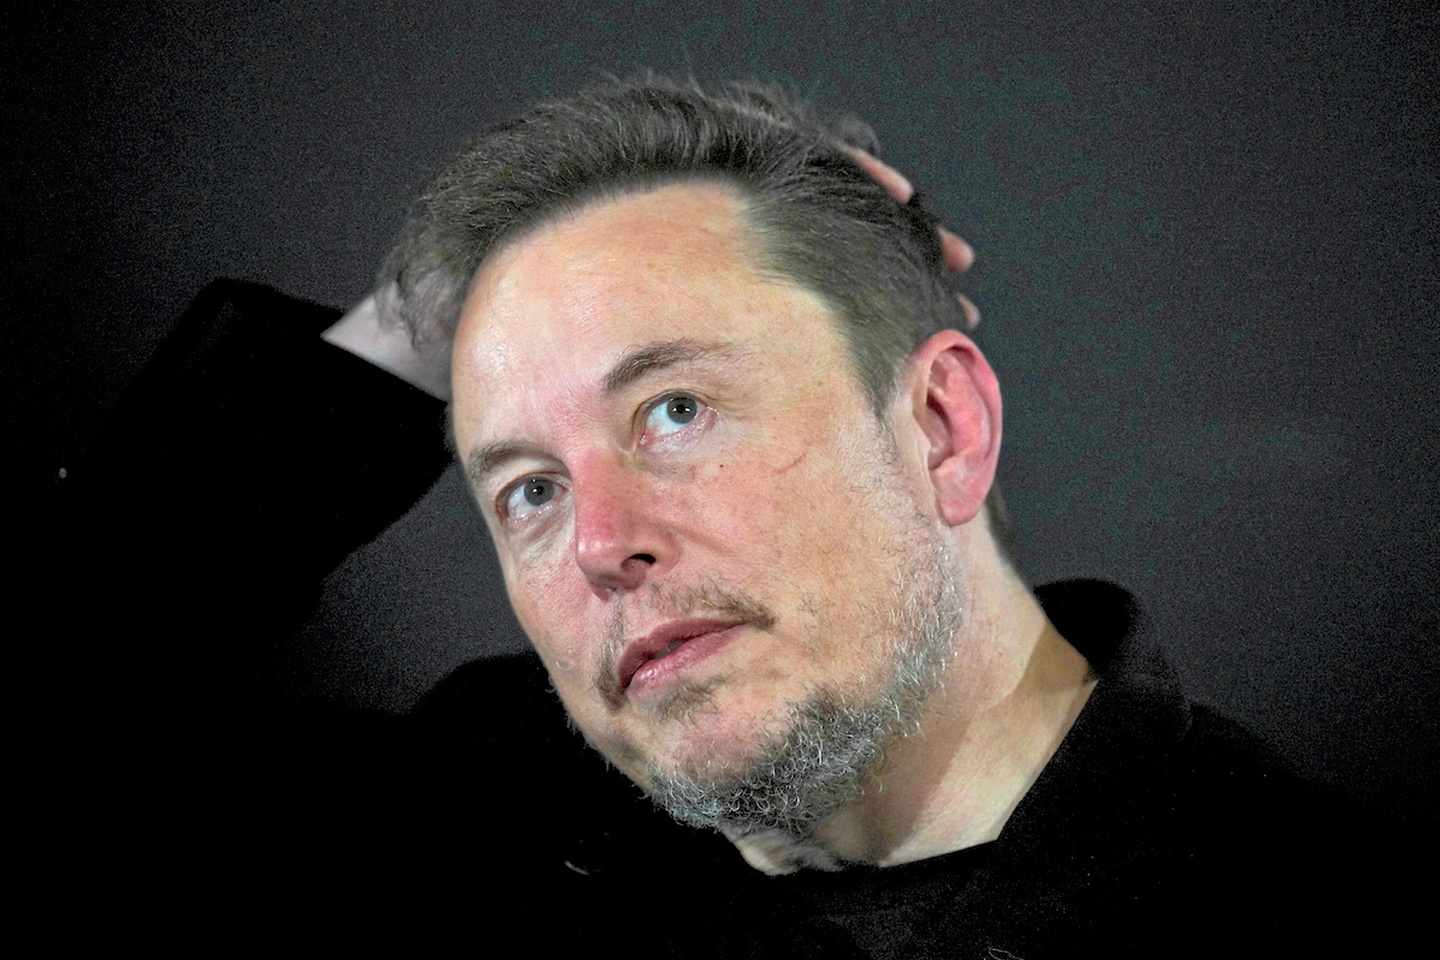 Tesla : pluie de commandes pour l'extraterrestre de l'automobile